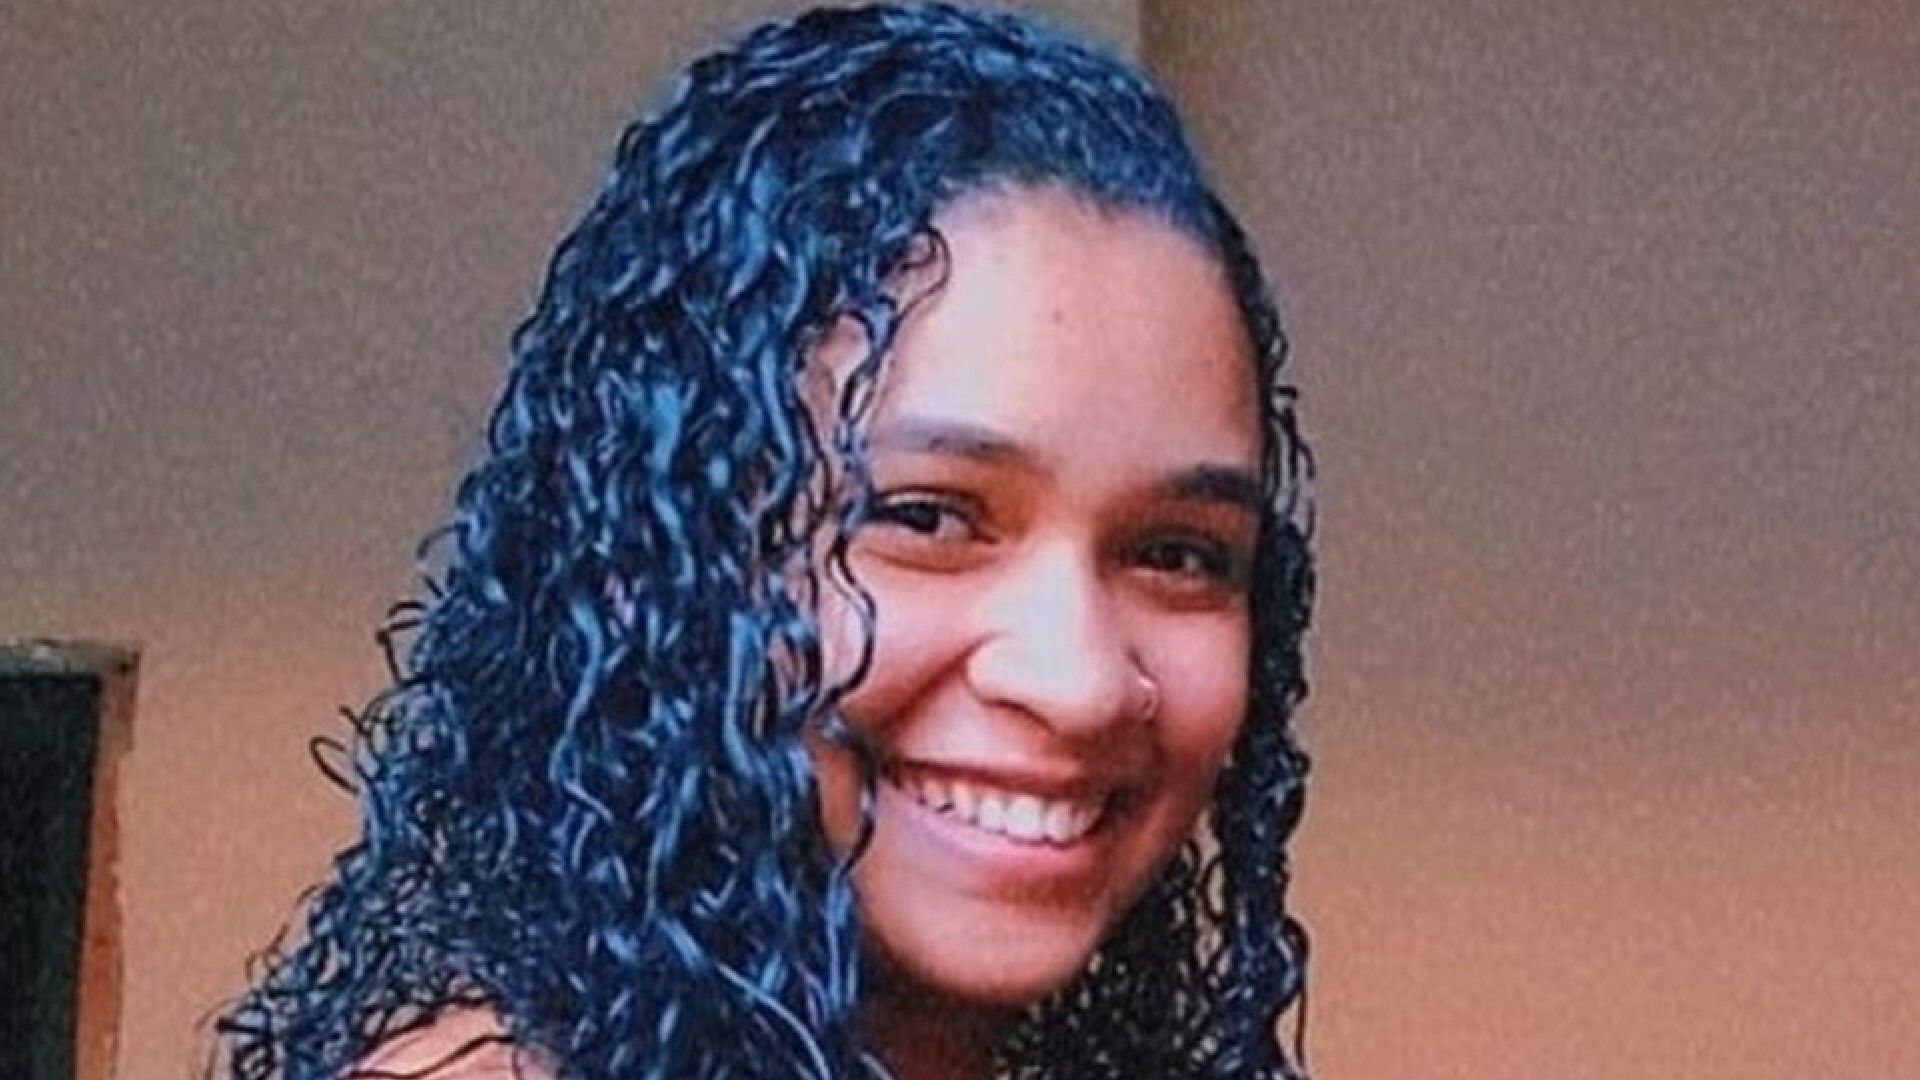  Pâmella Ferreira Andrade Martins, de 21 anos, morreu após ter bebê arrancado da barriga